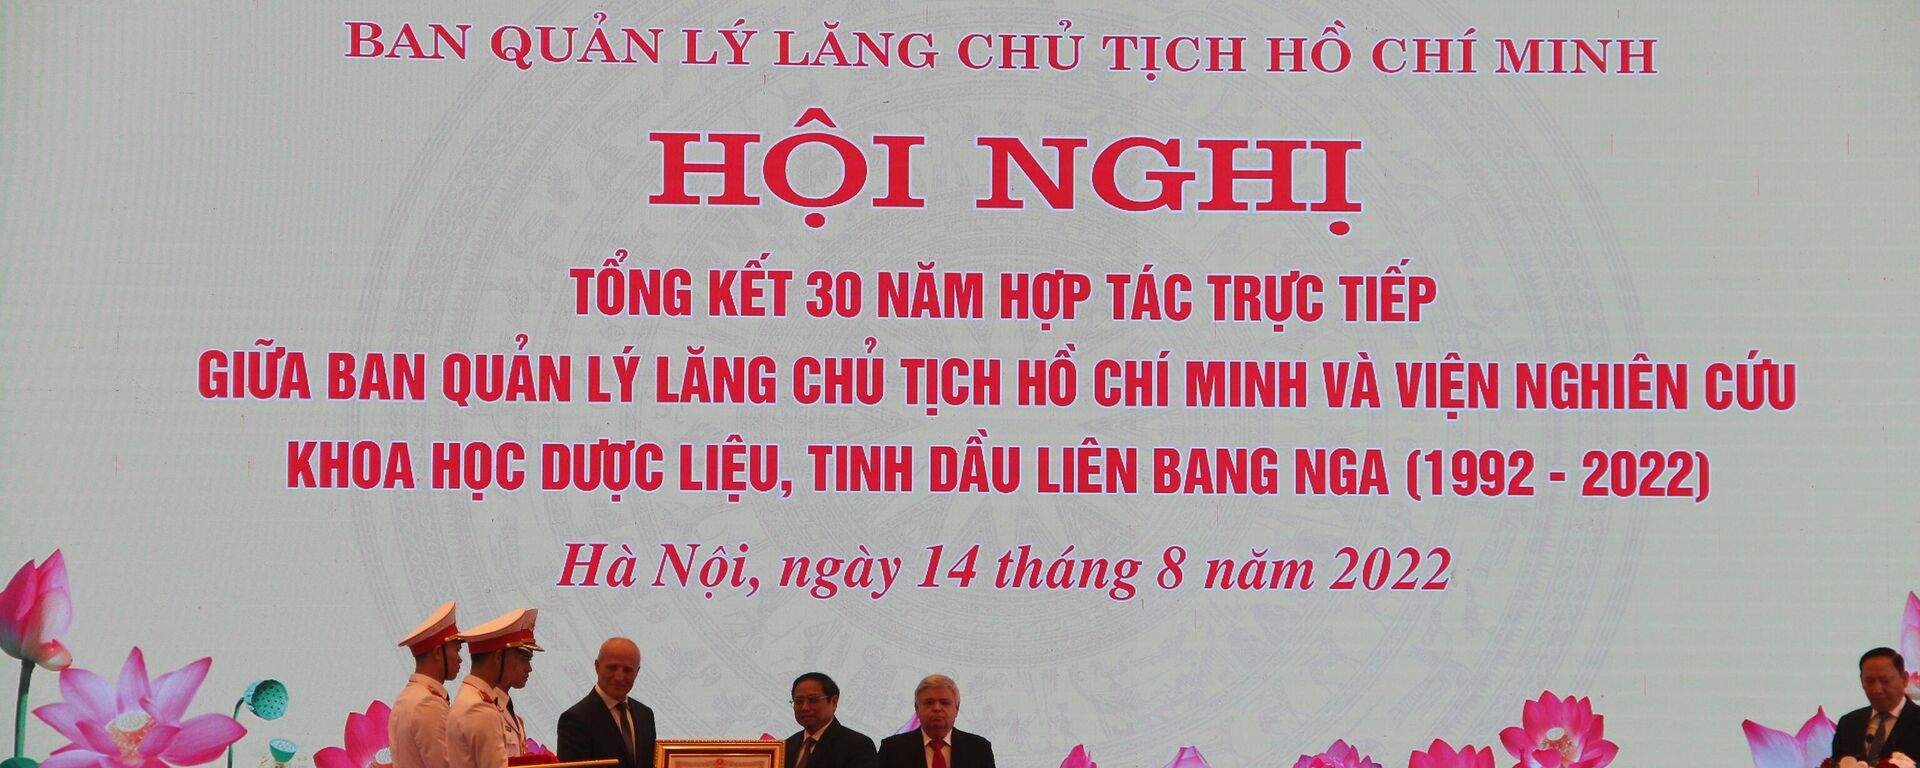 Hội nghị tổng kết 30 năm hợp tác trực tiếp giữa BQL Lăng Chủ tịch Hồ Chí Minh và Viện Nghiên cứu khoa học dược liệu và tinh dầu Liên Bang Nga - Sputnik Việt Nam, 1920, 14.08.2022